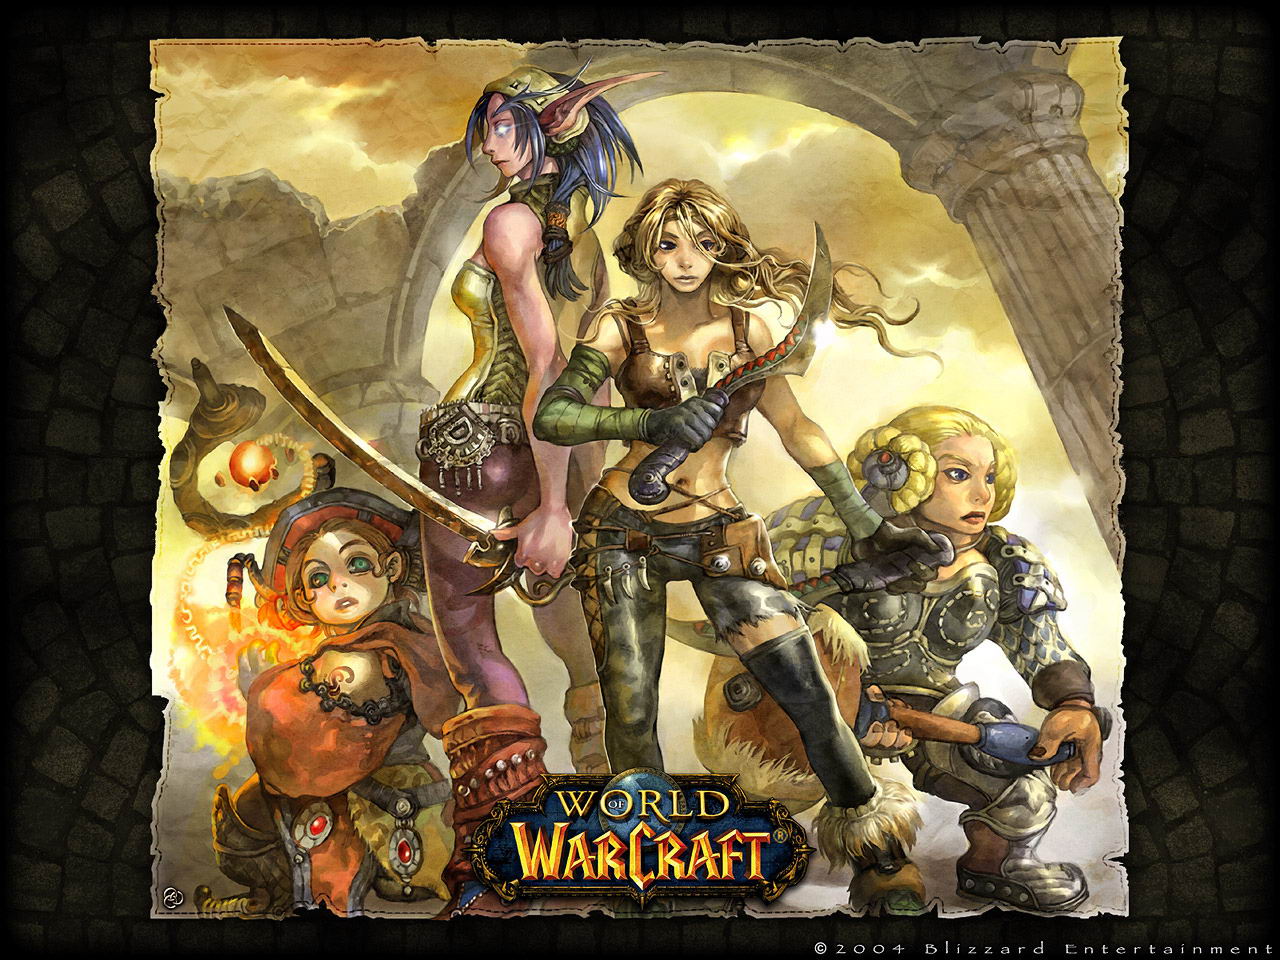  Alliance   World of Warcraft Wallpaper Korea Alliance Wallpaper 1280x960